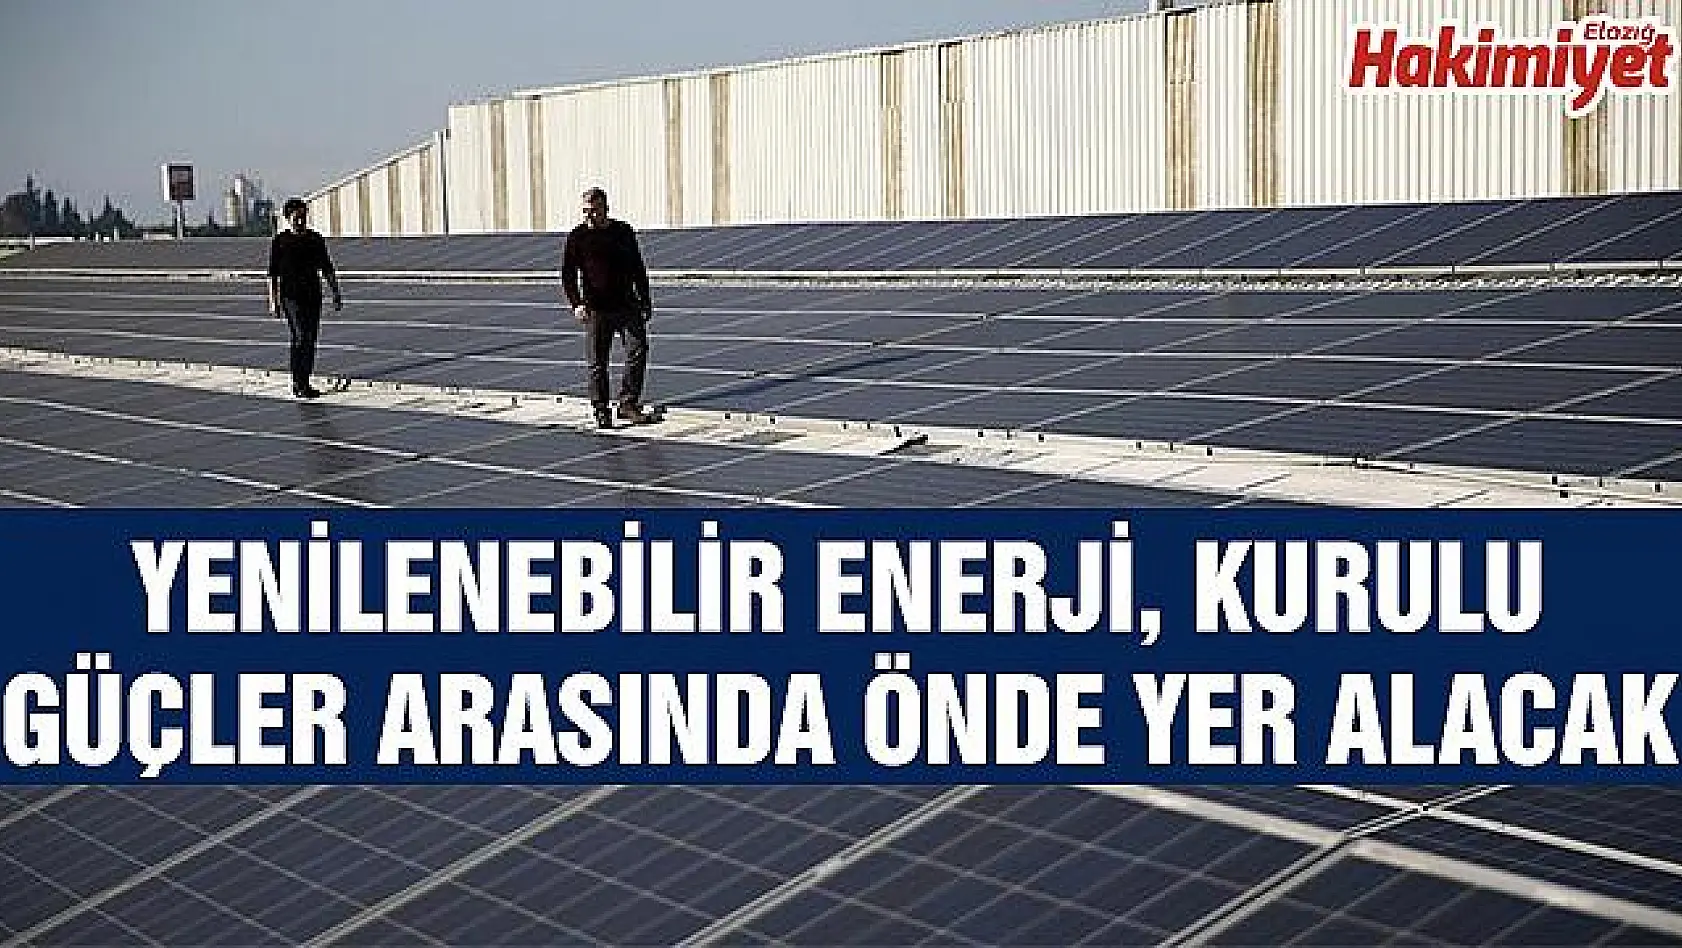 'Türkiye'de yenilenebilir enerji yatırımı için yüksek iştah var'